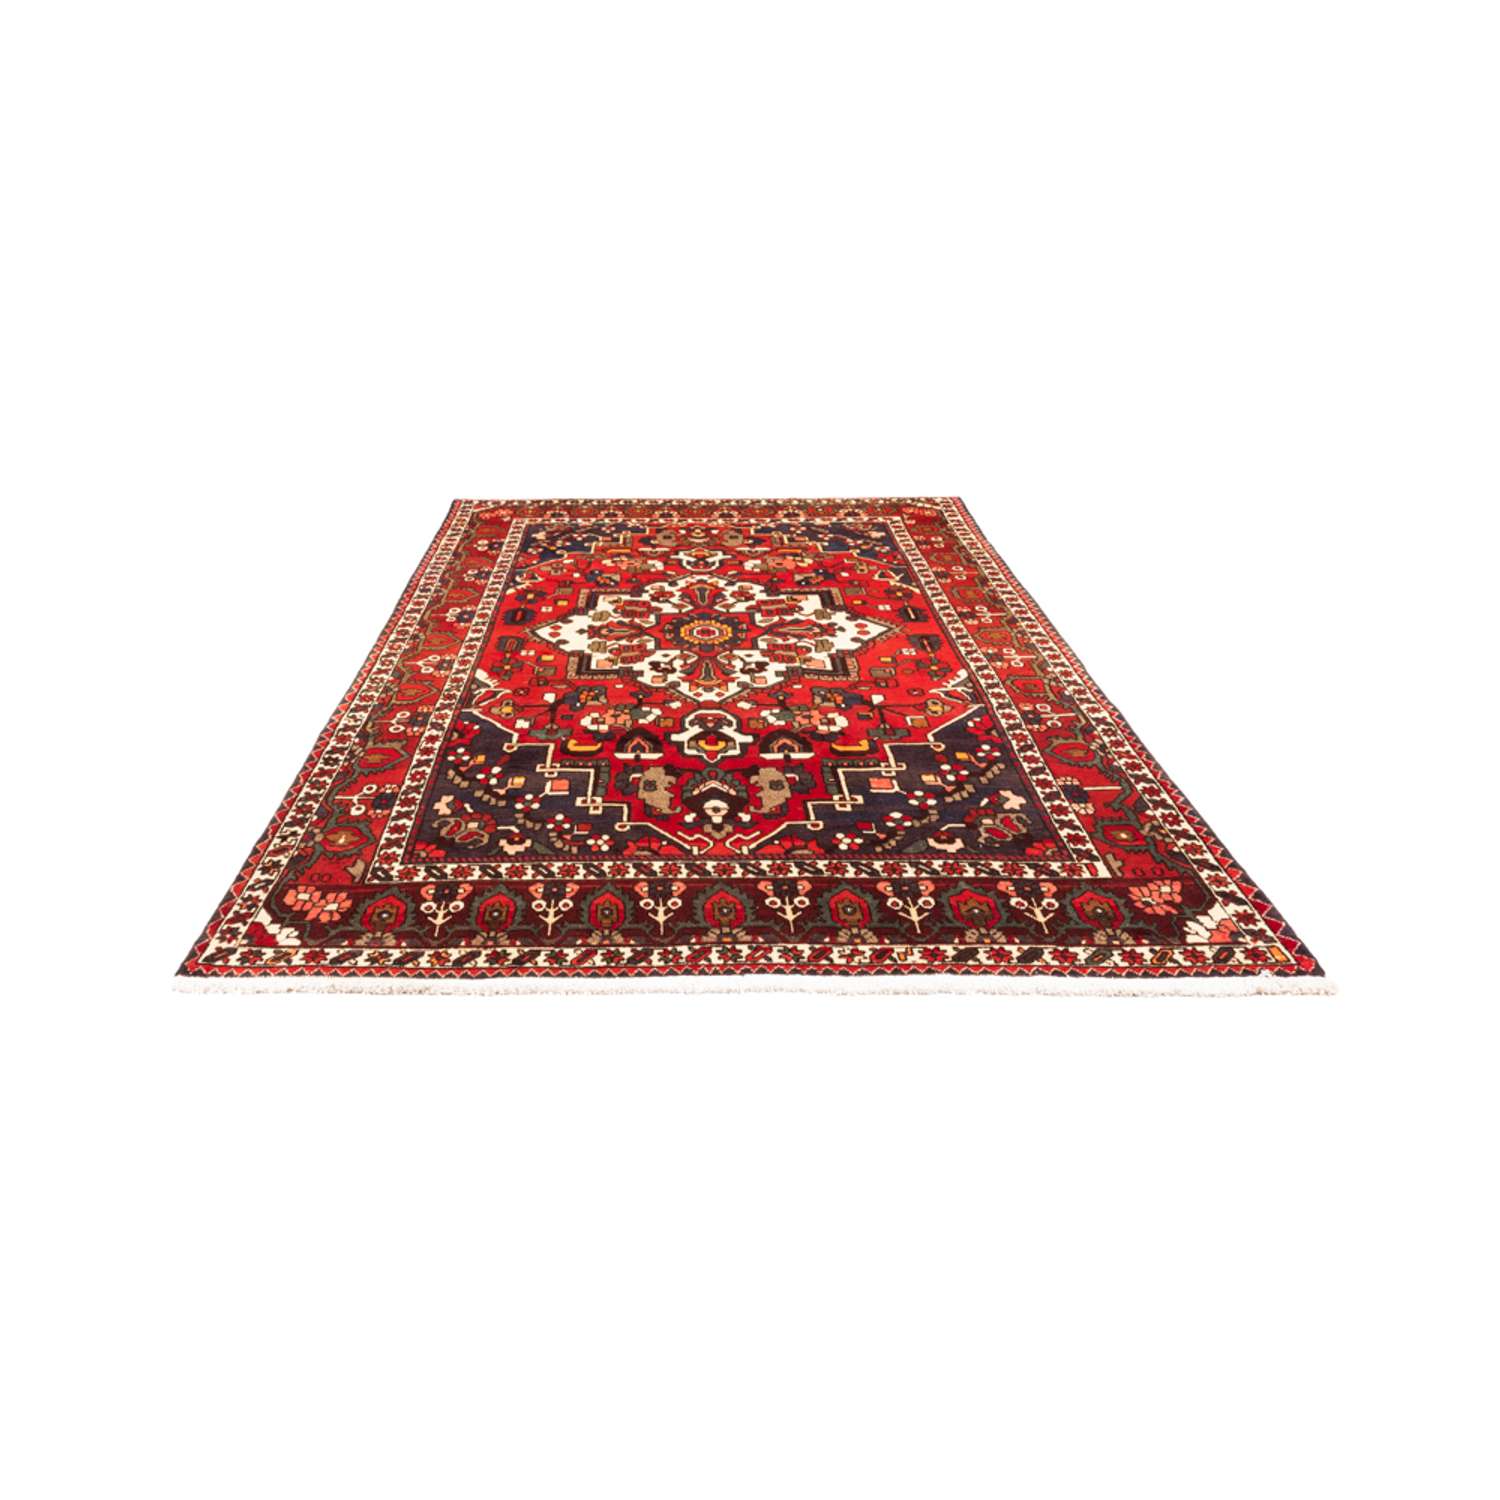 Perski dywan - Nomadyczny - 305 x 210 cm - czerwony